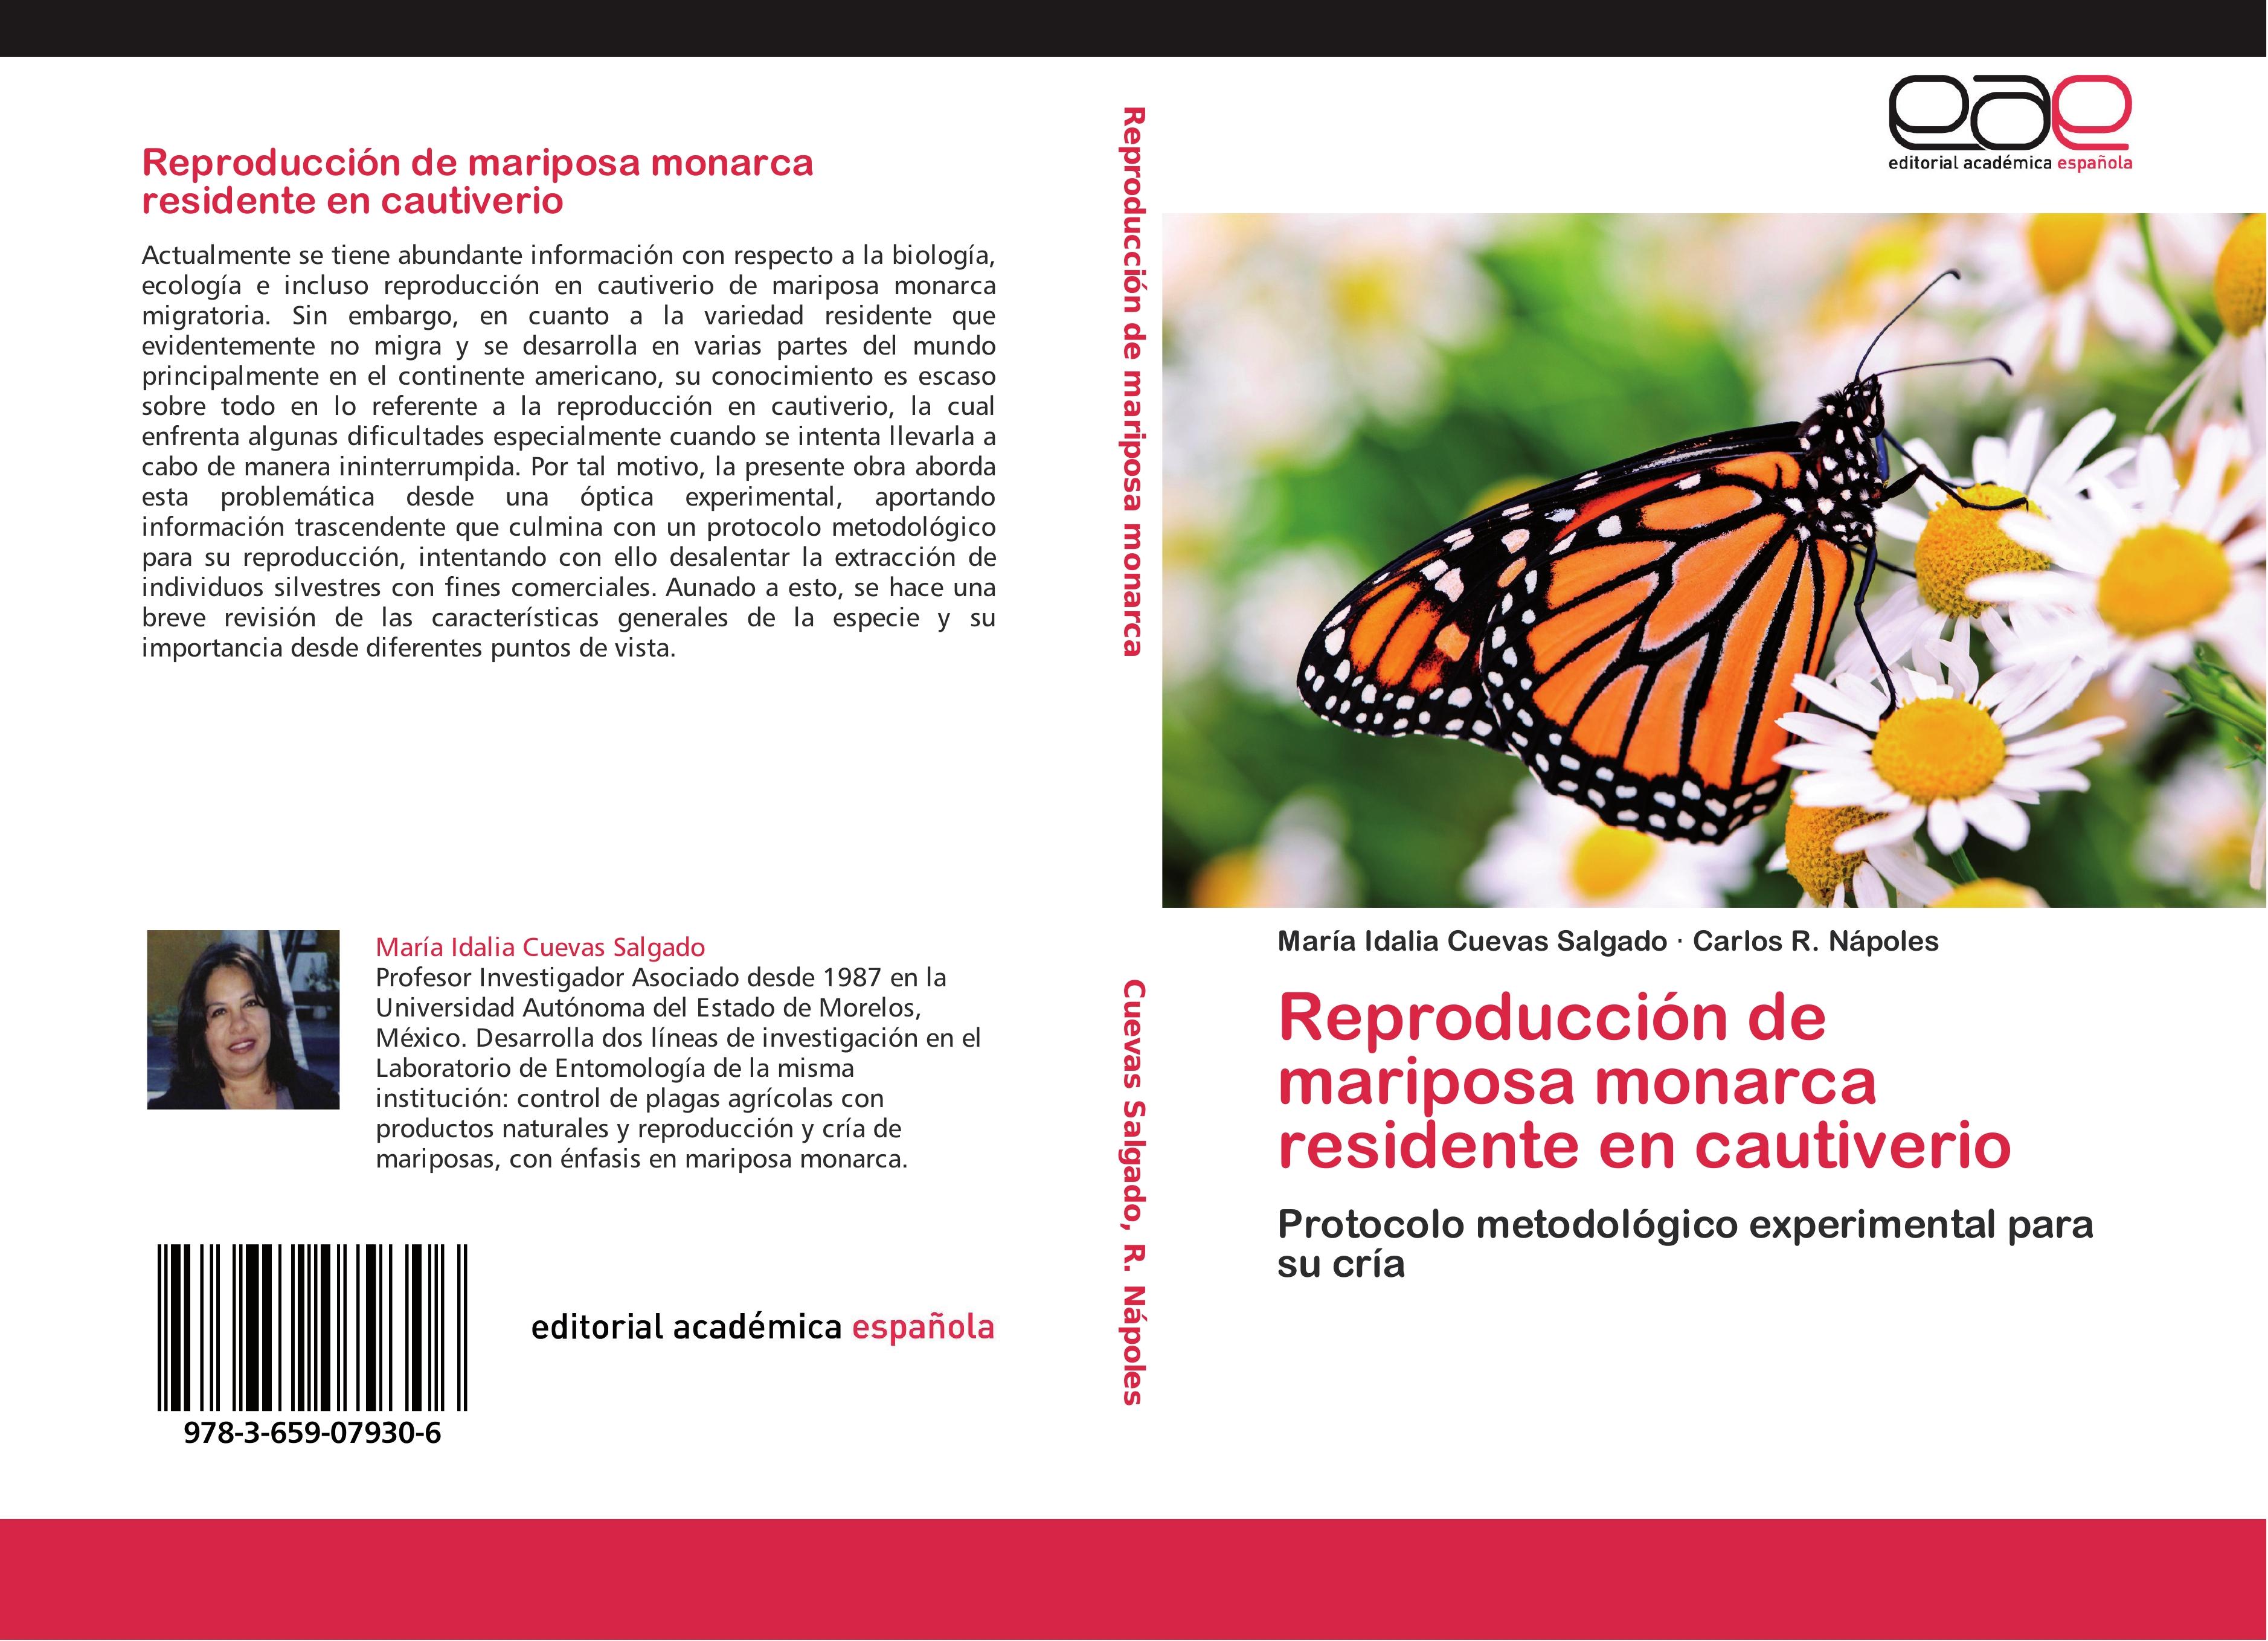 Reproducción de mariposa monarca residente en cautiverio - María Idalia Cuevas Salgado Carlos R. Nápoles